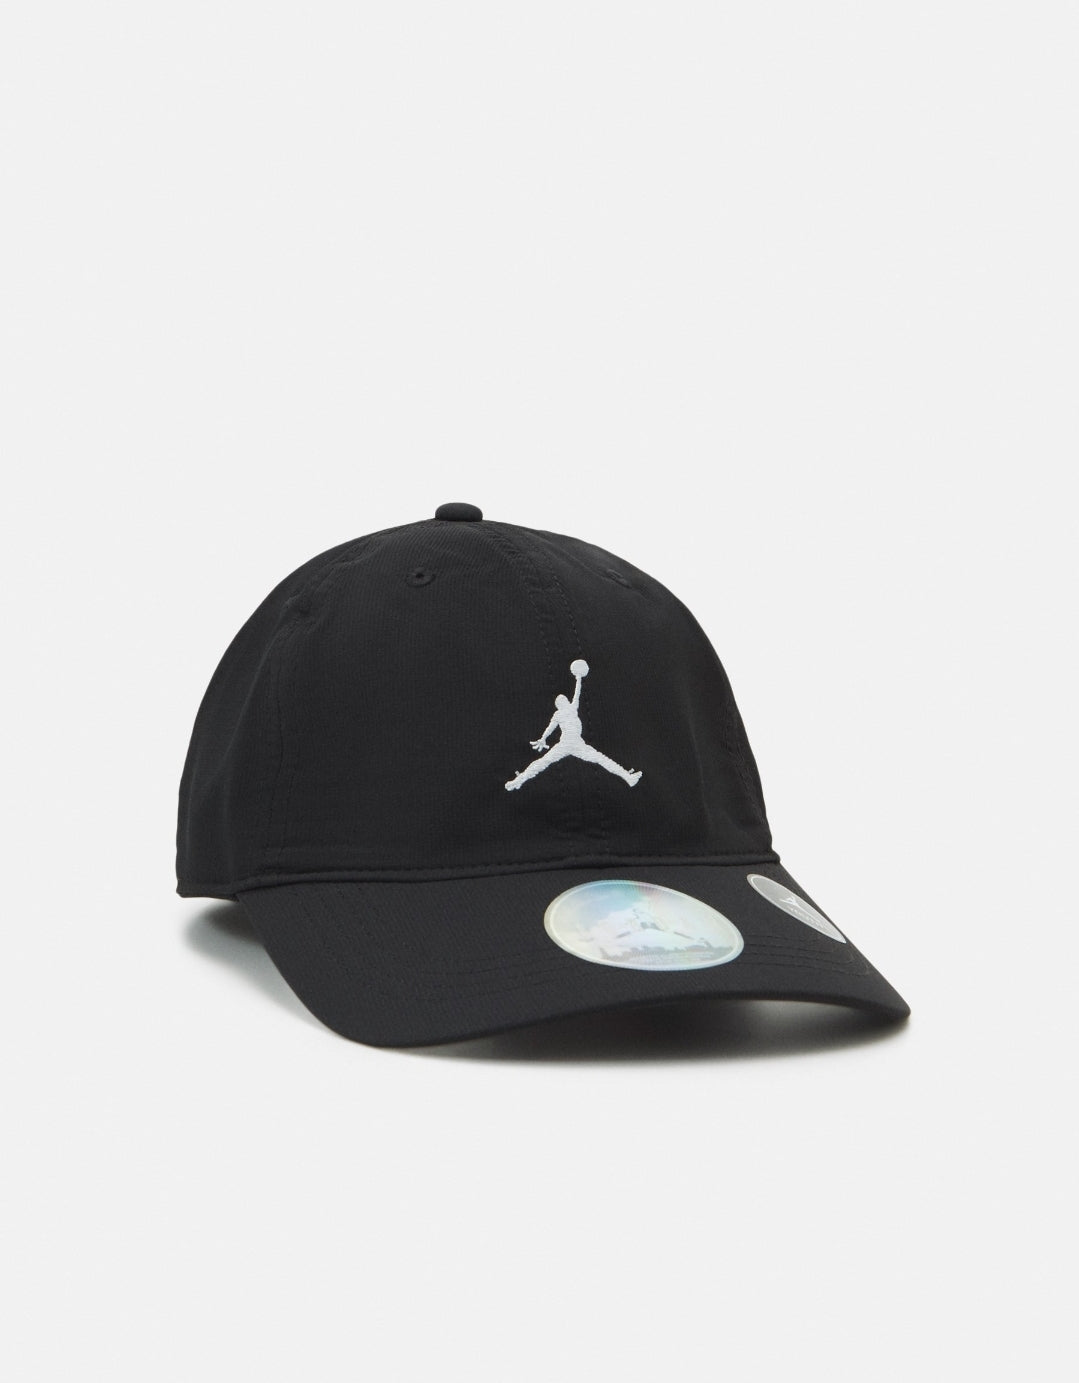 Jordan casquette enfant "logo" noir réglable